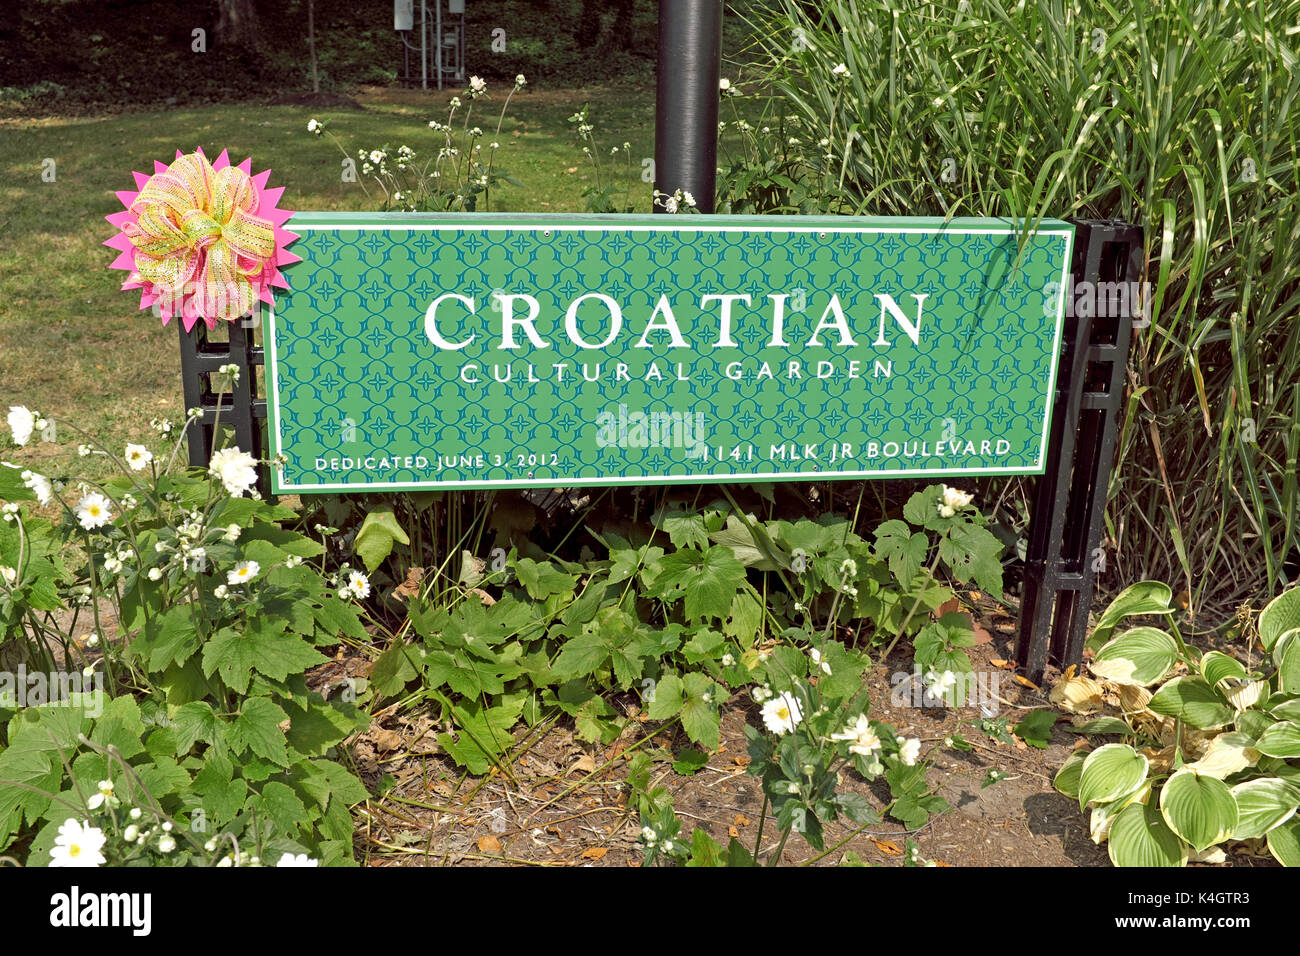 Le jardin de la culture croate, situé dans la région de Rockefeller Park à Cleveland, Ohio, USA, est l'un des dizaines de jardins propres à chaque pays de célébrer la culture. Banque D'Images